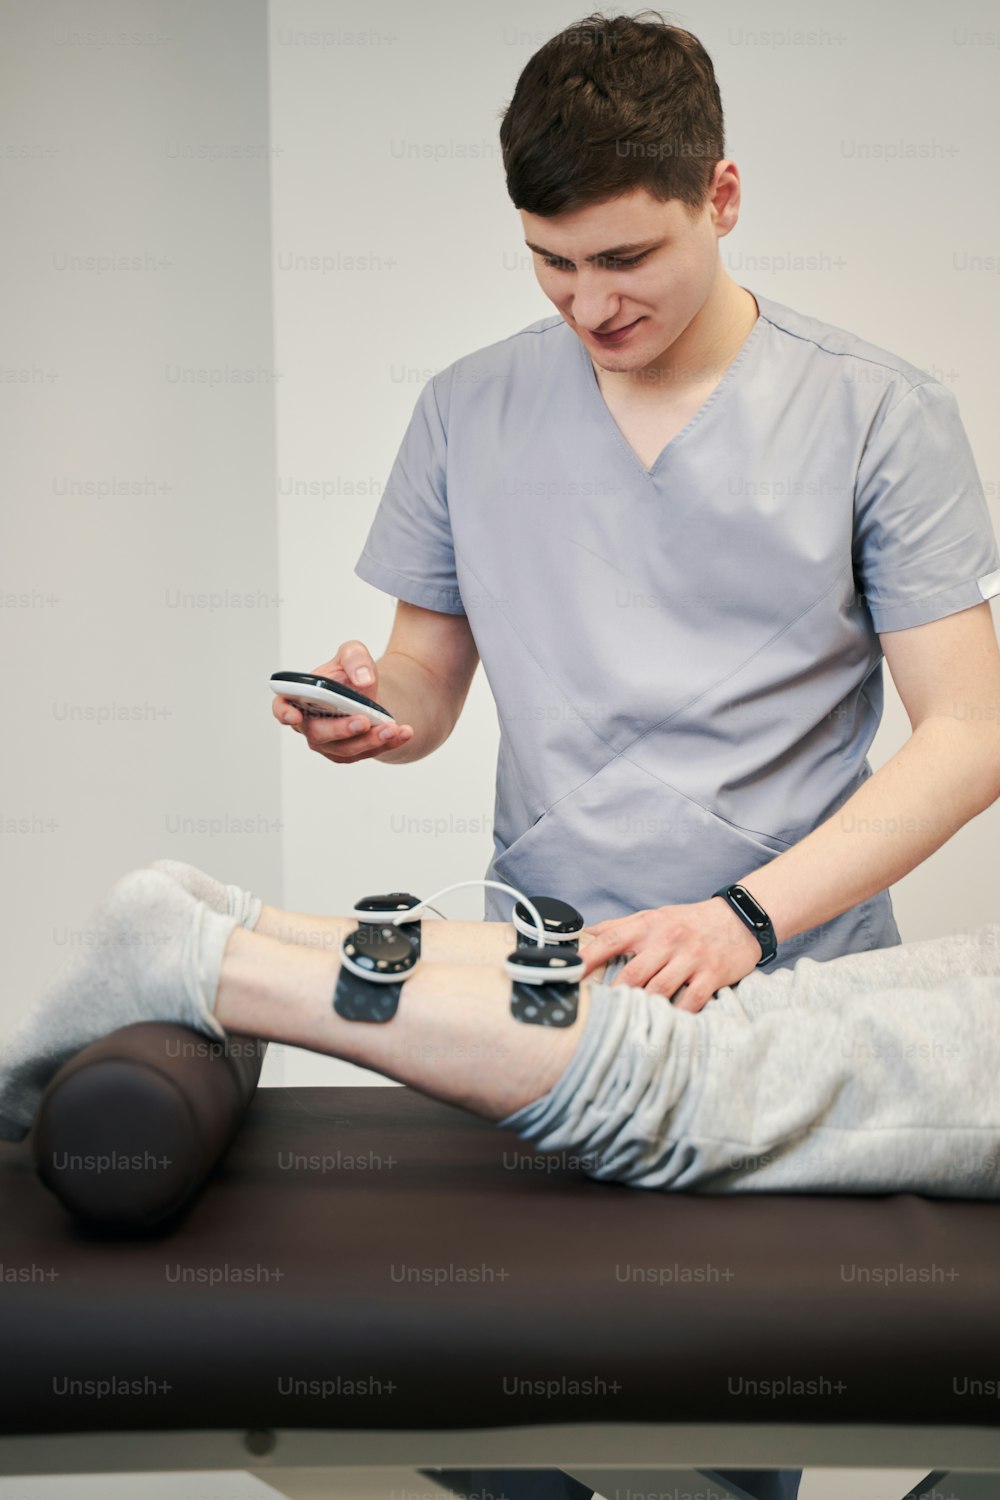 Un professionnel de la santé appuie sur des électrodes à pression sur la jambe de la personne tout en touchant l’écran de l’unité de stimulation musculaire